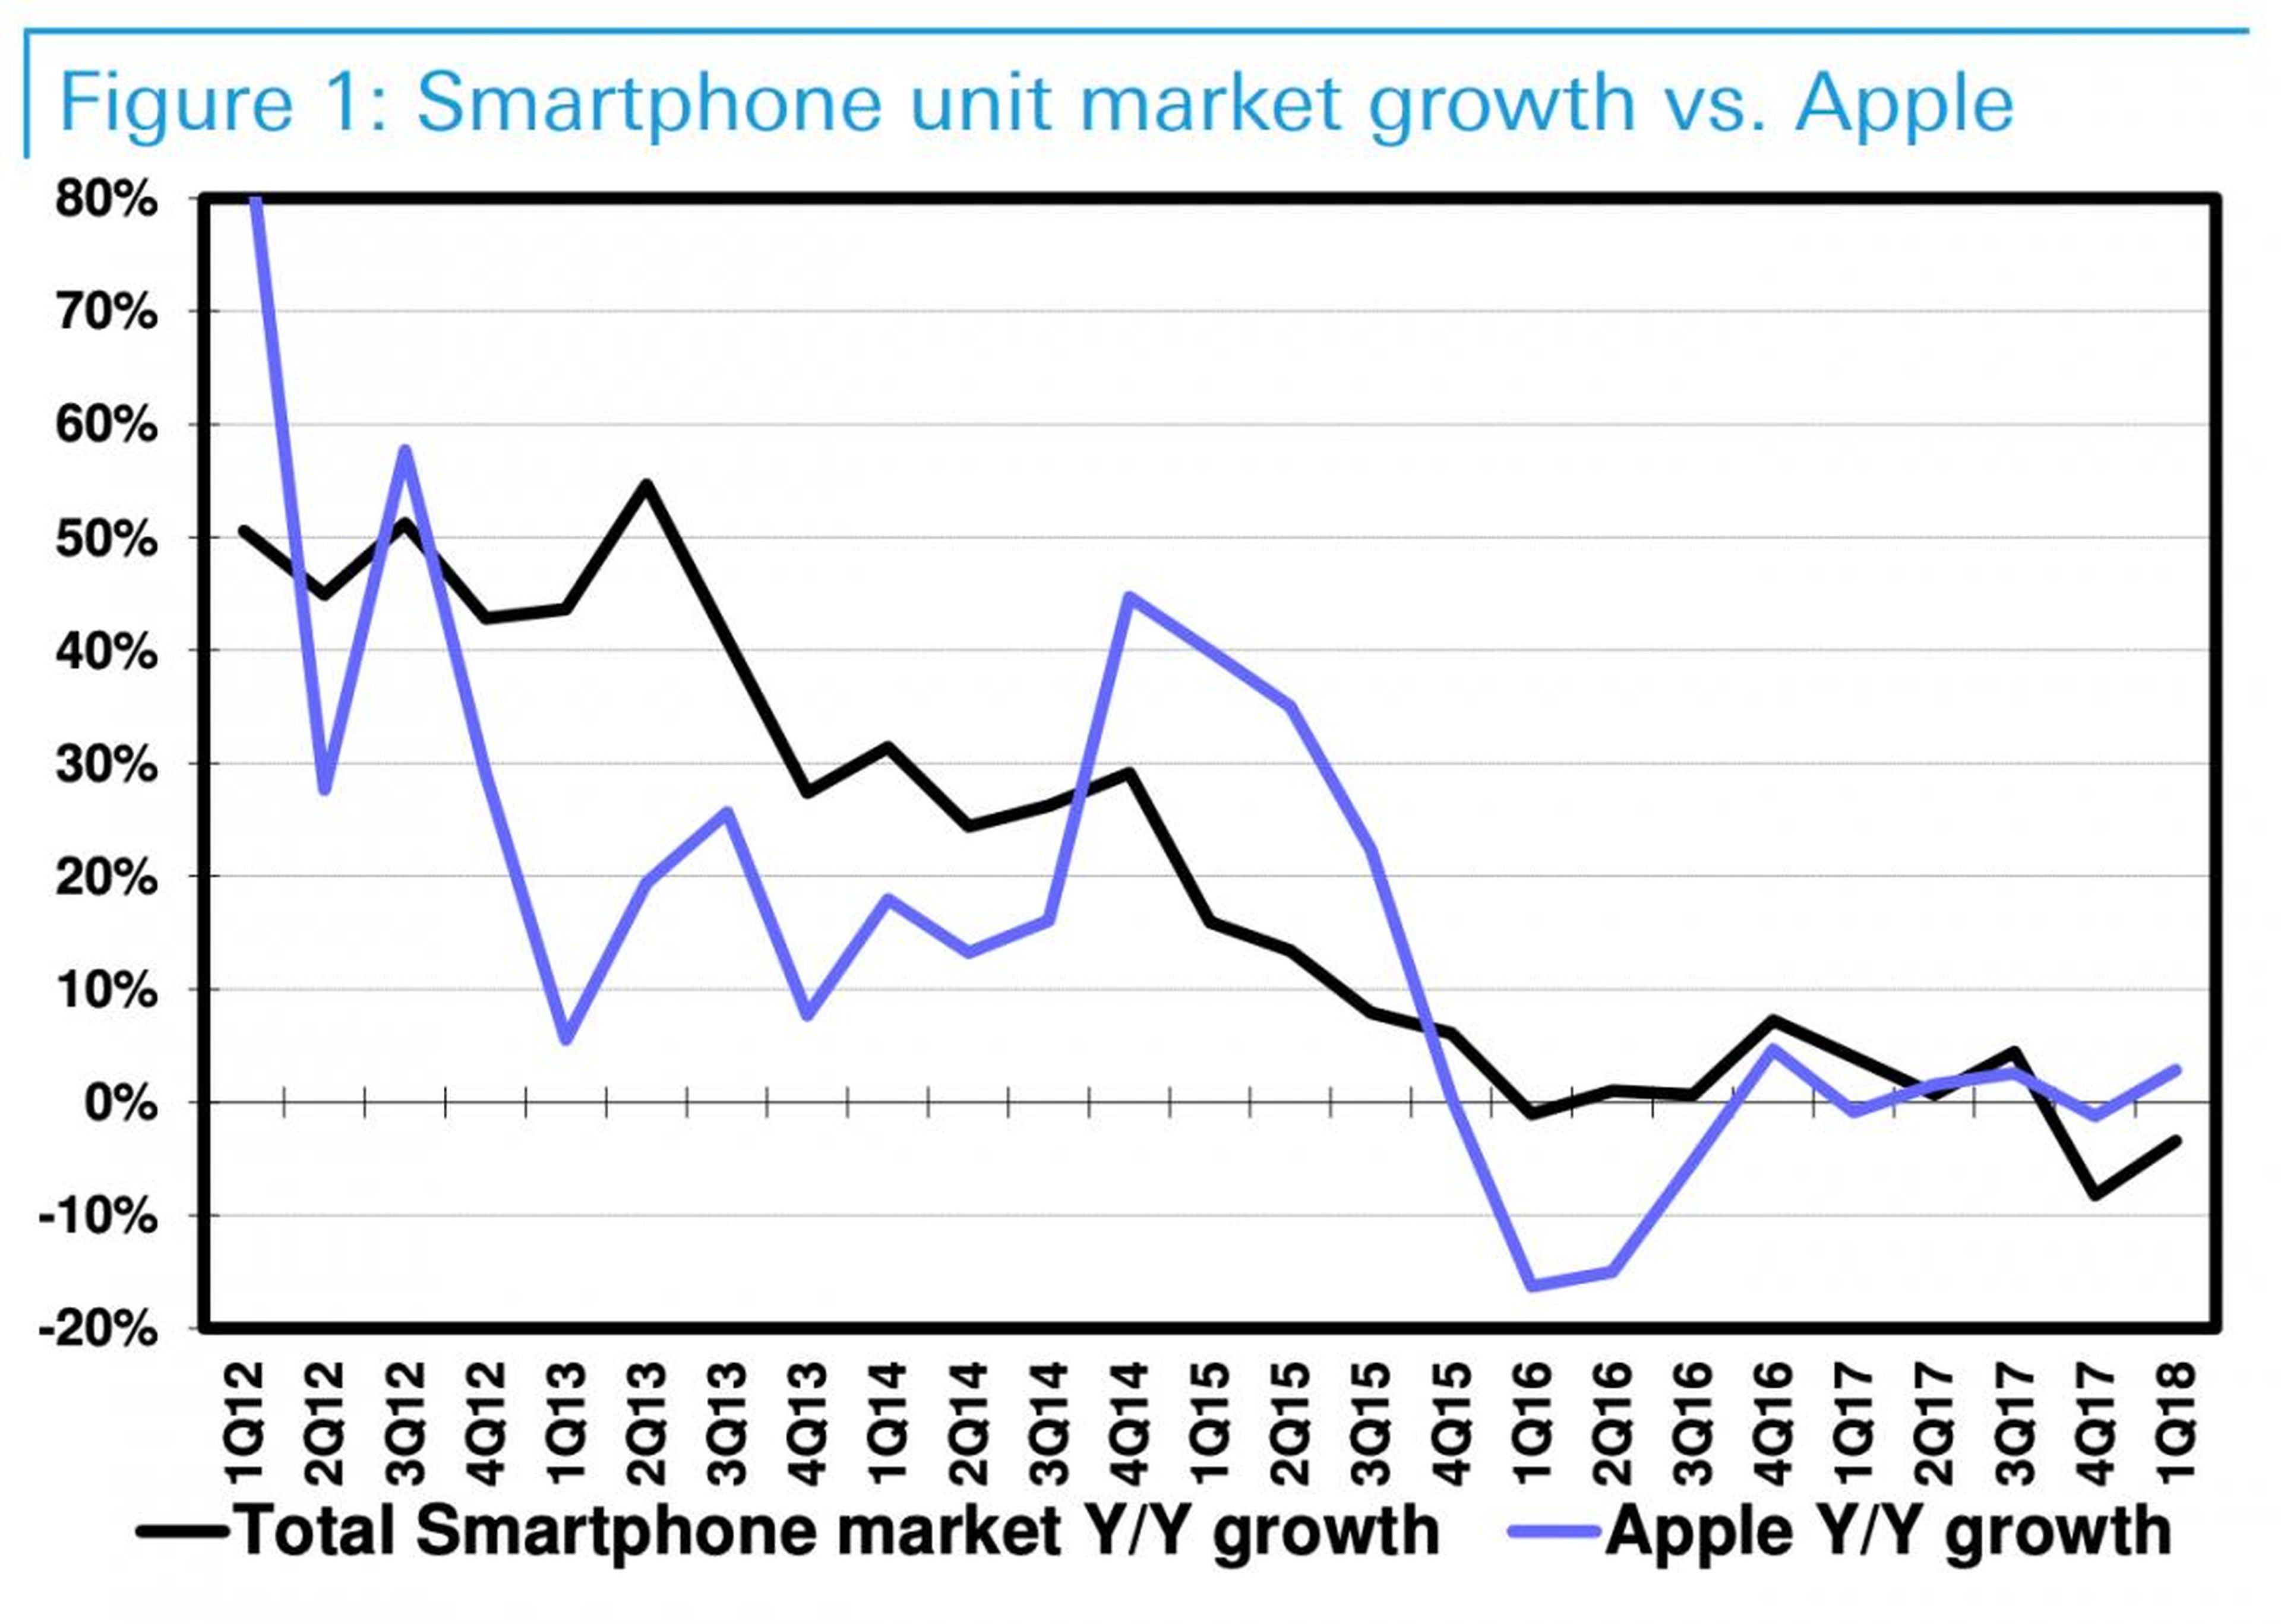 Las ventas de los iPhone normalmente se sitúan por debajo del comportamiento global del mercado